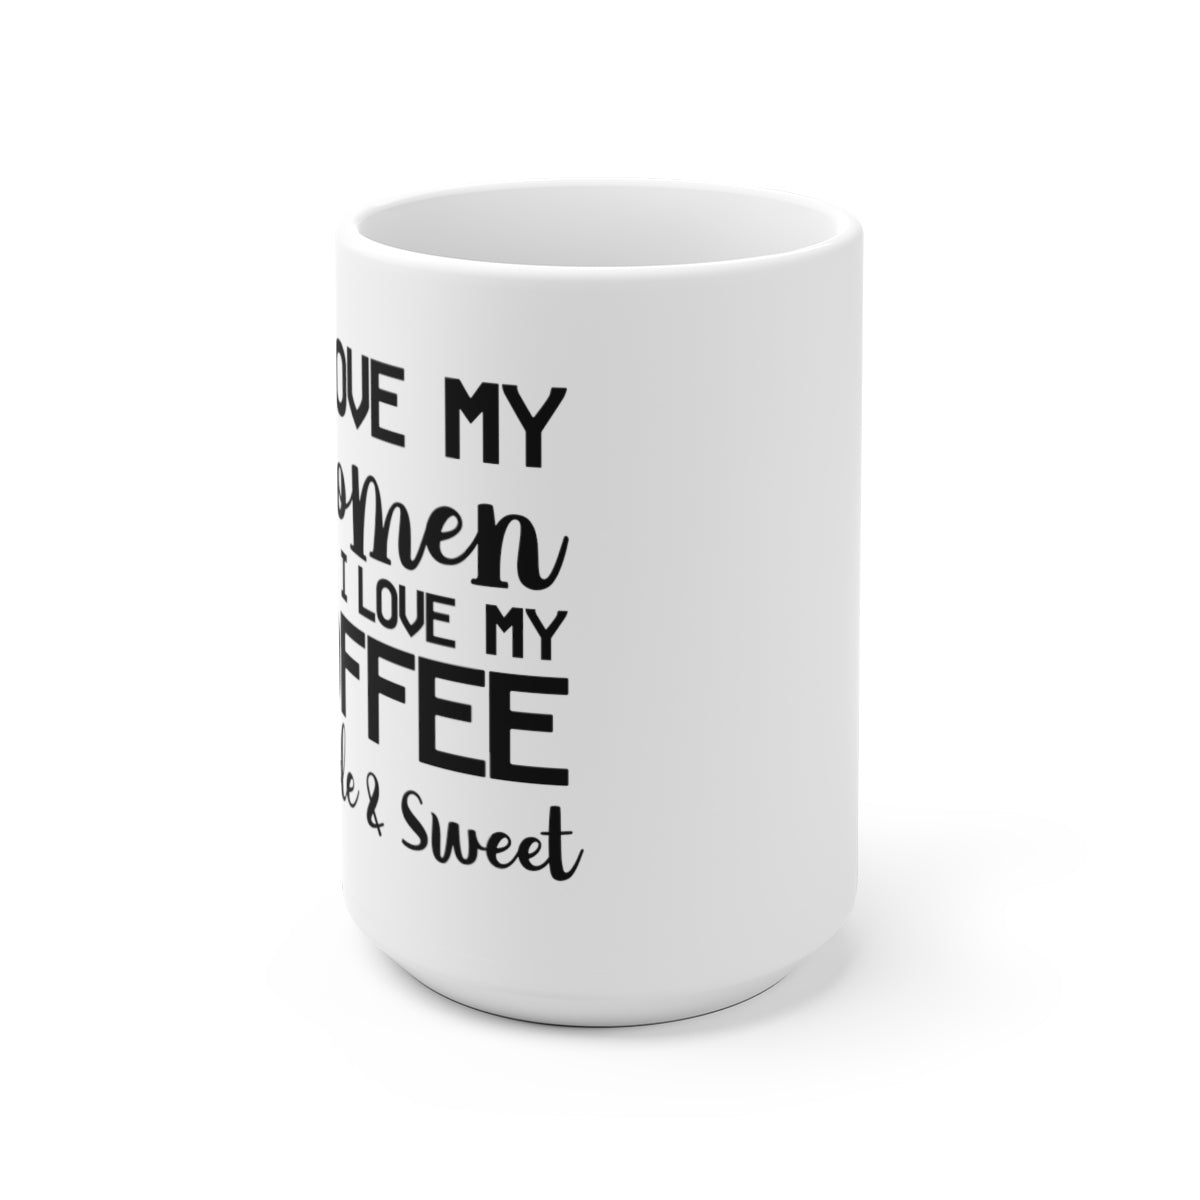 How I like My Men (Coffee)- XP8400W White Travel Mug – Sweet Ginger Gifts